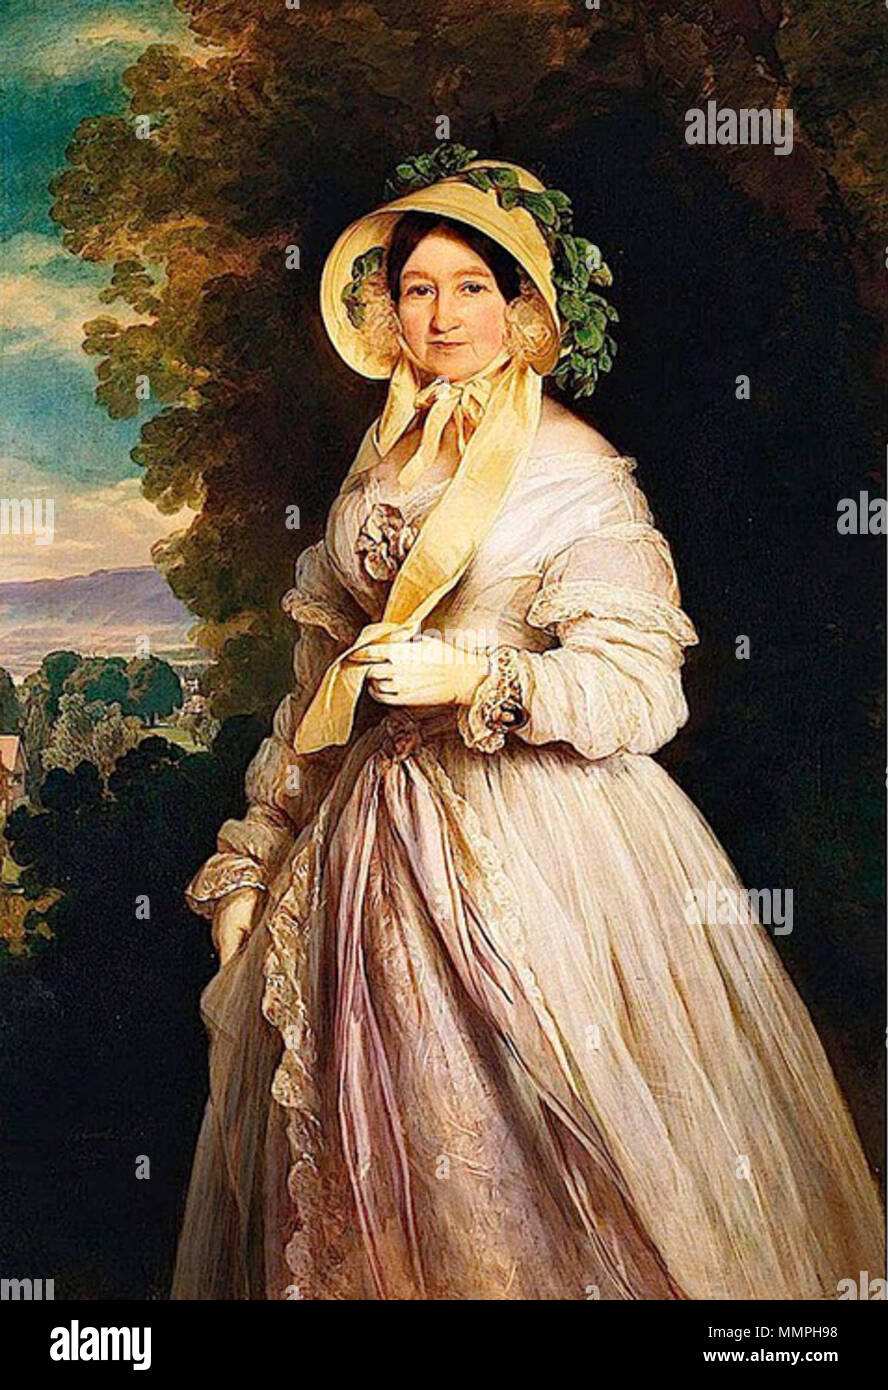 . Inglese: gran duchessa Anna Fyodorovna della Russia (1781-1860), née Princess Julianne di Sassonia Coburgo - Gotha-Saalfeld. Winterhalter è nato nella Foresta Nera dove è stato incoraggiato a disegnare a scuola. Nel 1818 si recò a Friburgo per studiare sotto Karl Ludwig Schüler e poi si trasferì a Monaco di Baviera nel 1823, dove ha frequentato l'Accademia e studiato sotto Josef Stieler, un ritratto di moda pittore. Winterhalter è stata prima portata all' attenzione della regina Victoria dalla regina dei belgi e successivamente verniciato numerosi ritratti presso la corte inglese dal 1842 fino alla sua morte. La principessa Juliane era il Foto Stock